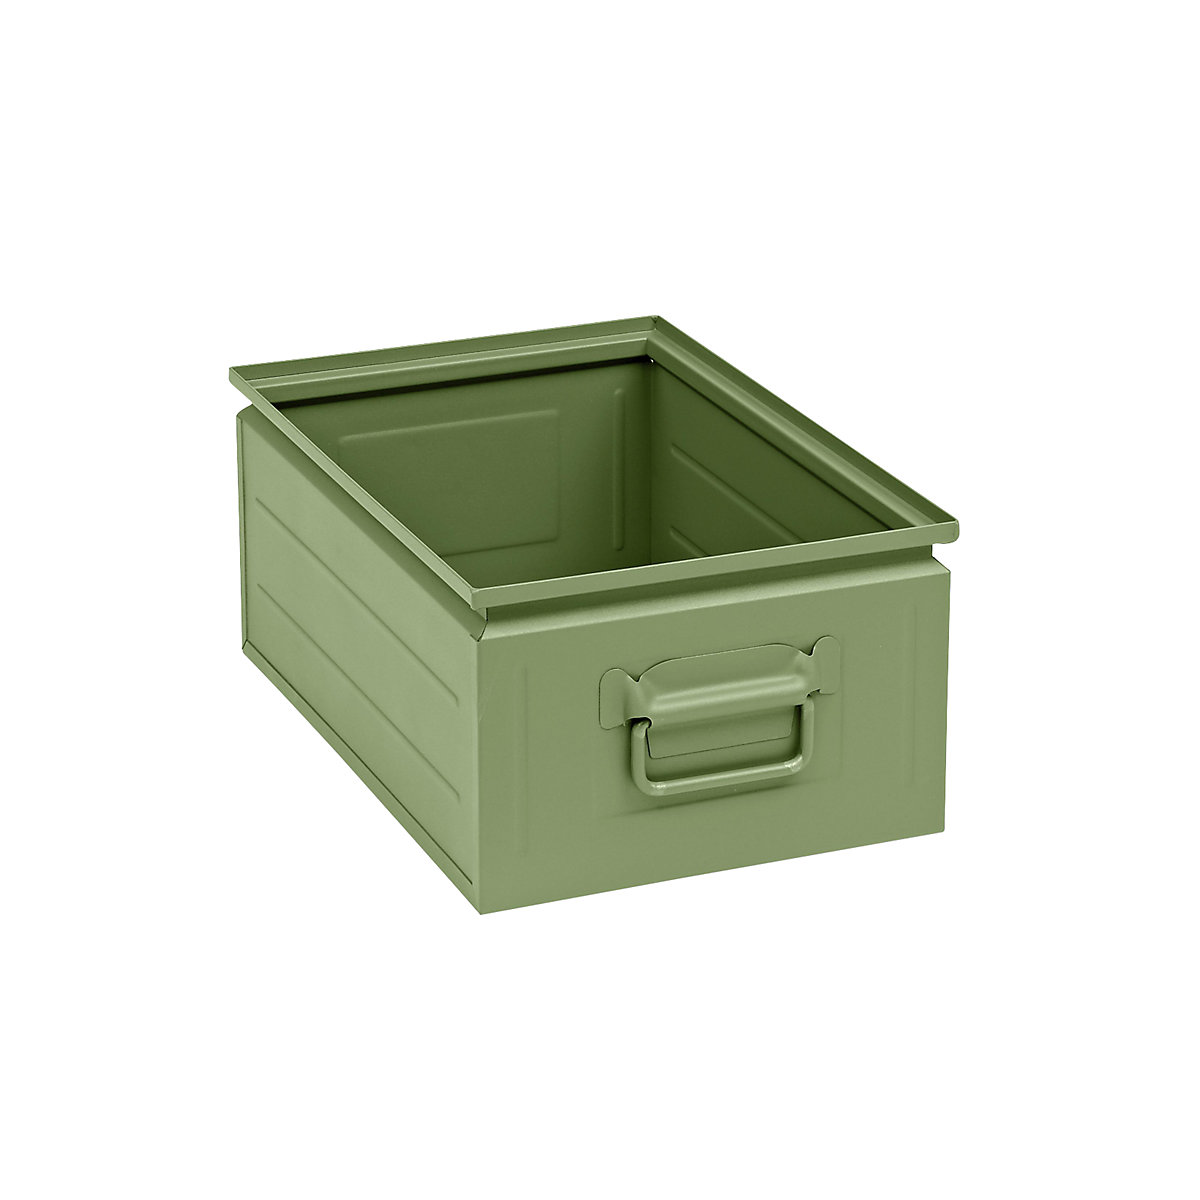 Caixa empilhável em chapa de aço, capacidade de aprox. 25 l, verde reseda RAL 6011